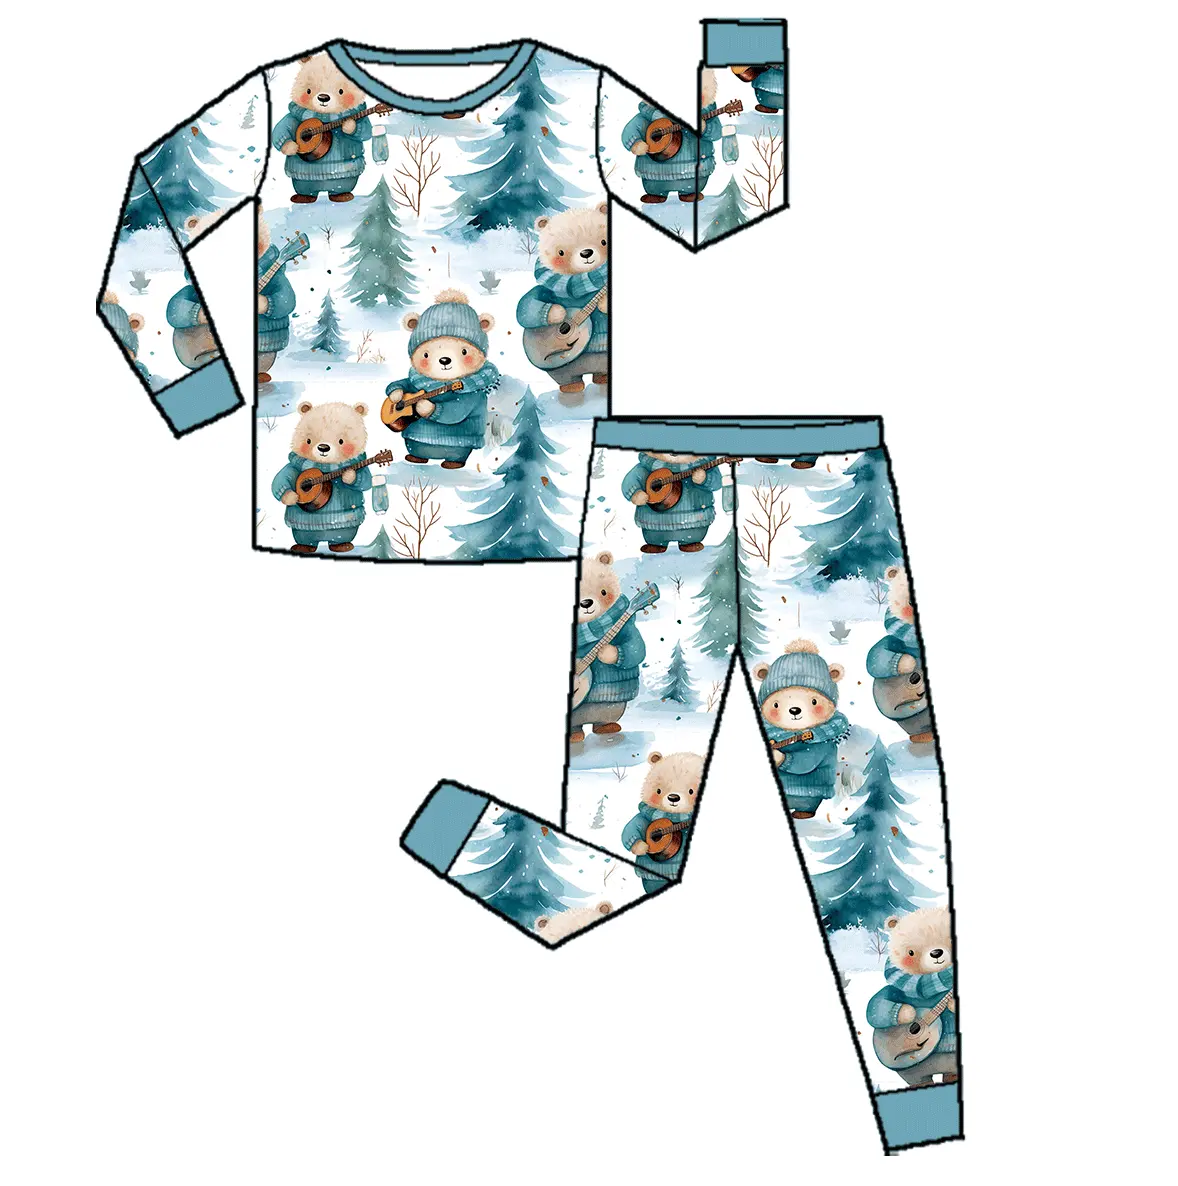 daisy süßes print kleinkind kinder t-shirt top mit heißen shorts 2-teilig kleidungssets baby mädchen set